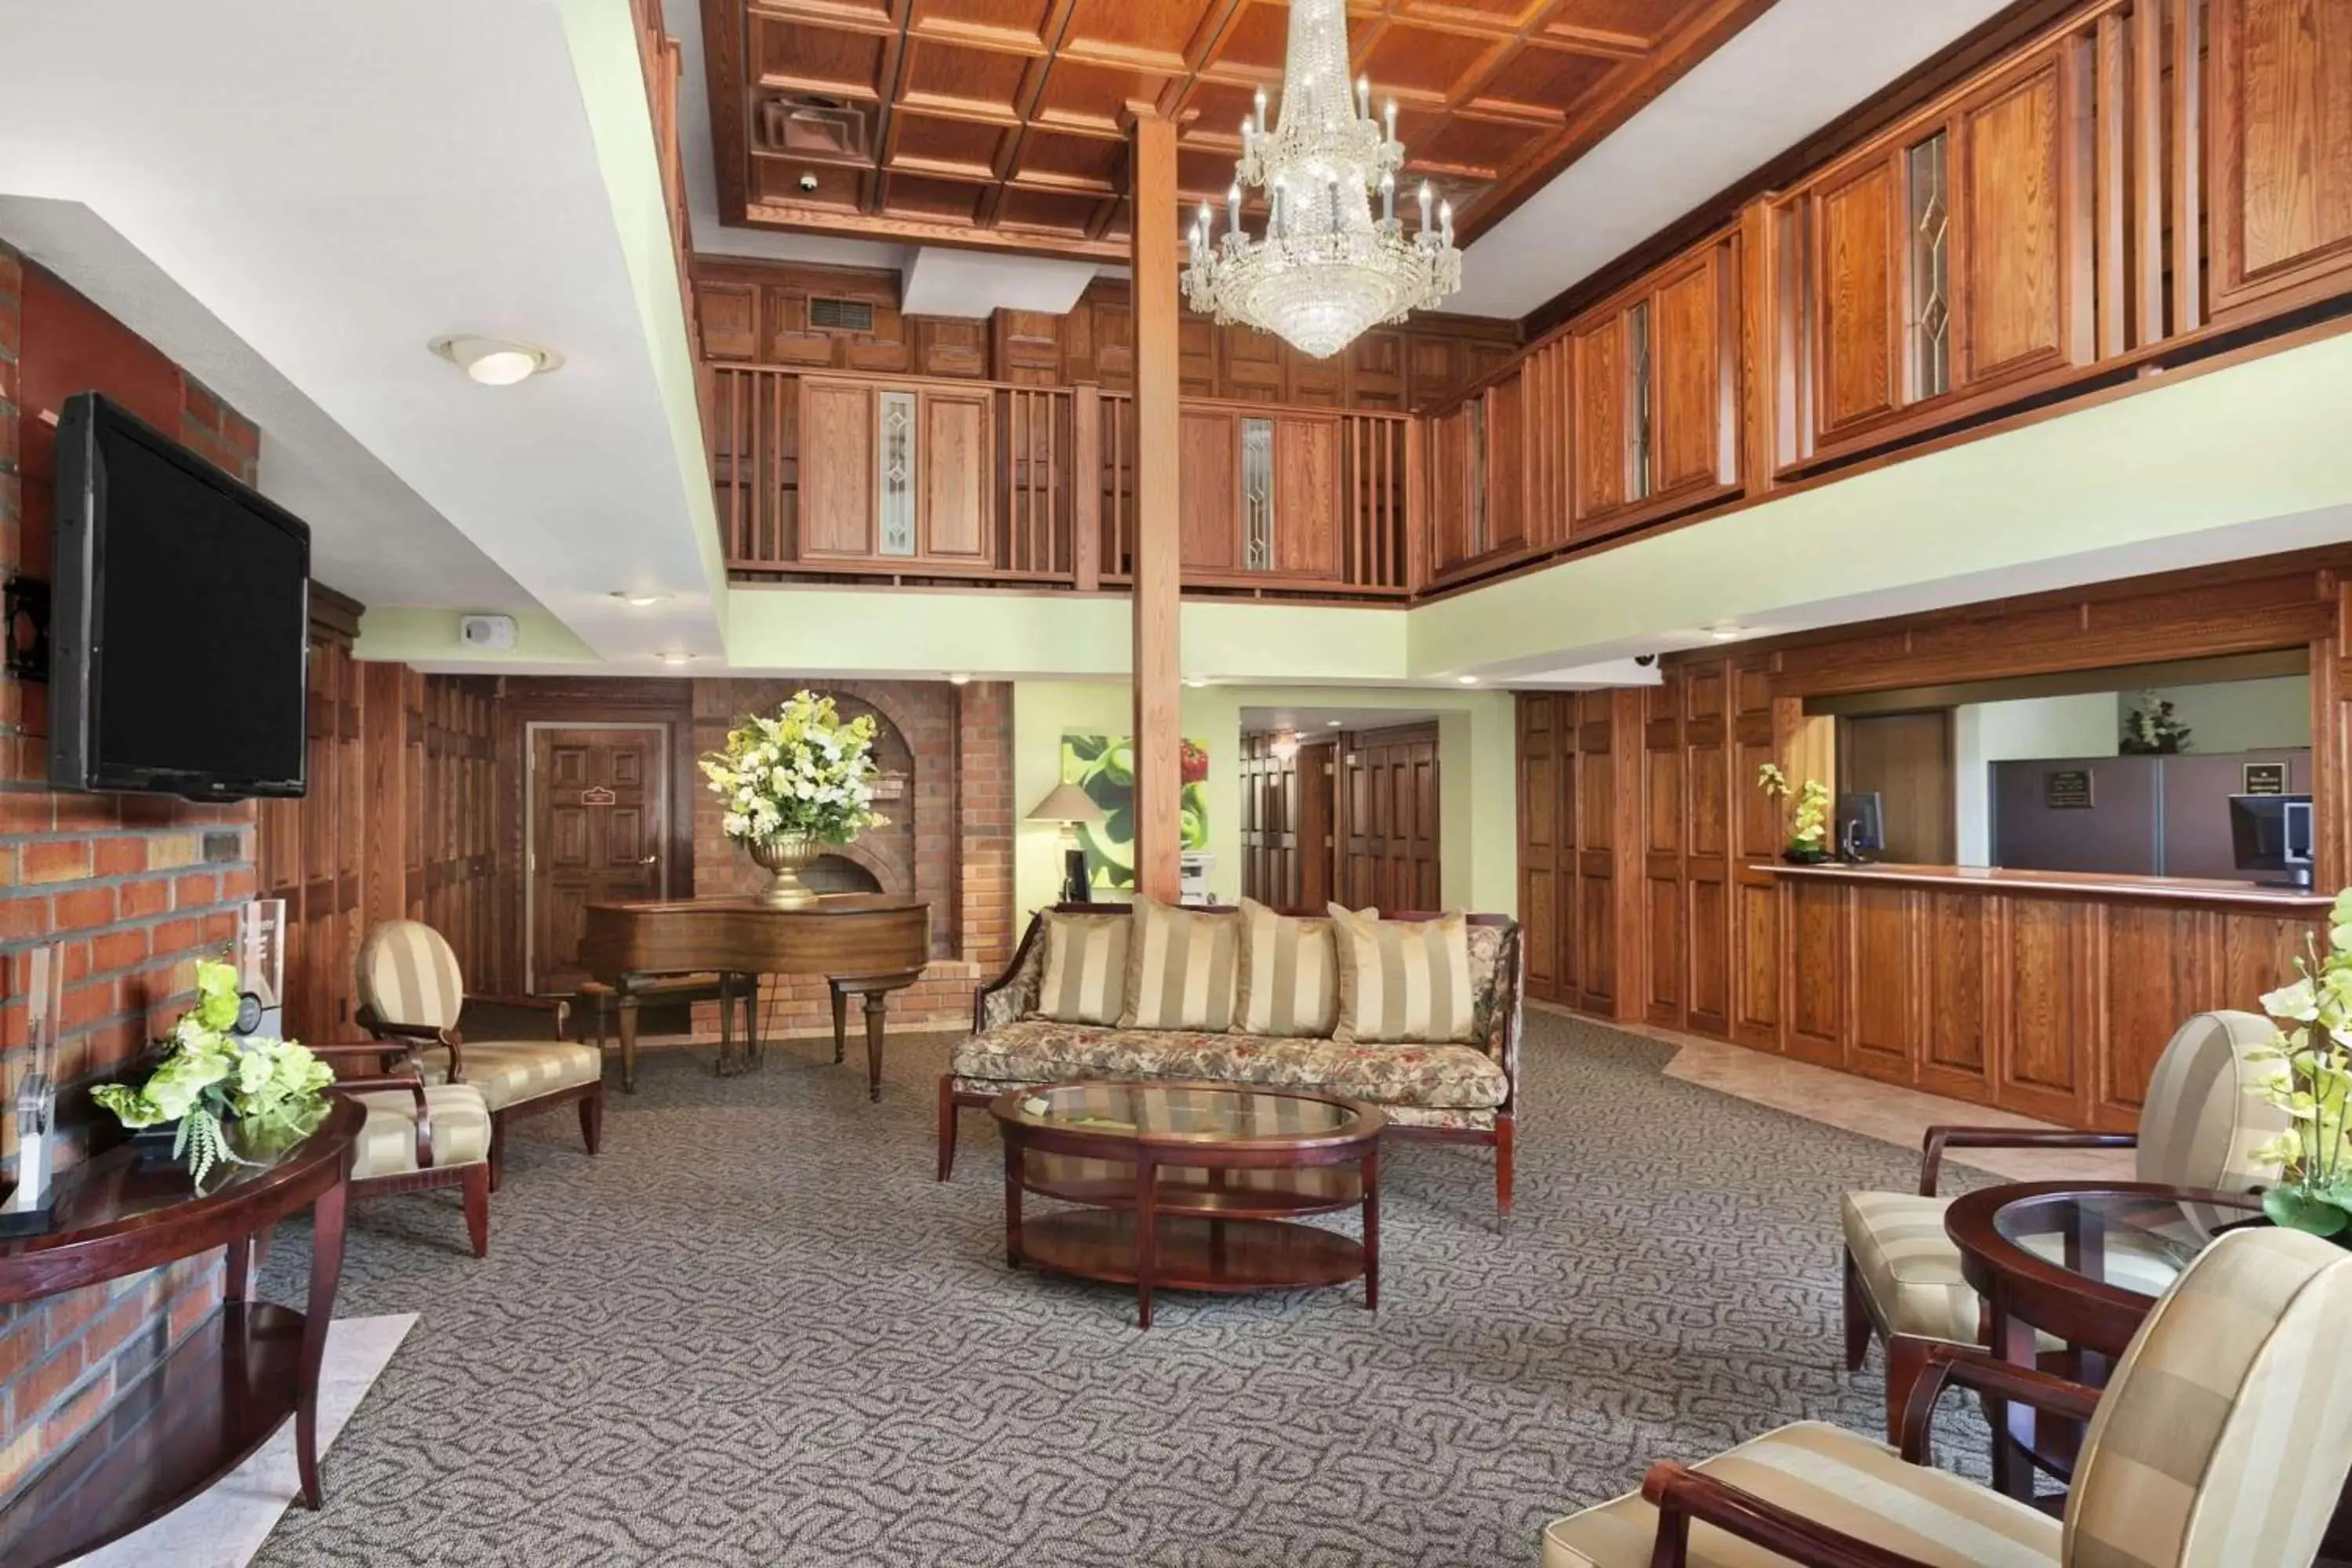 Lobby or reception in Ramada by Wyndham Saginaw Hotel & Suites